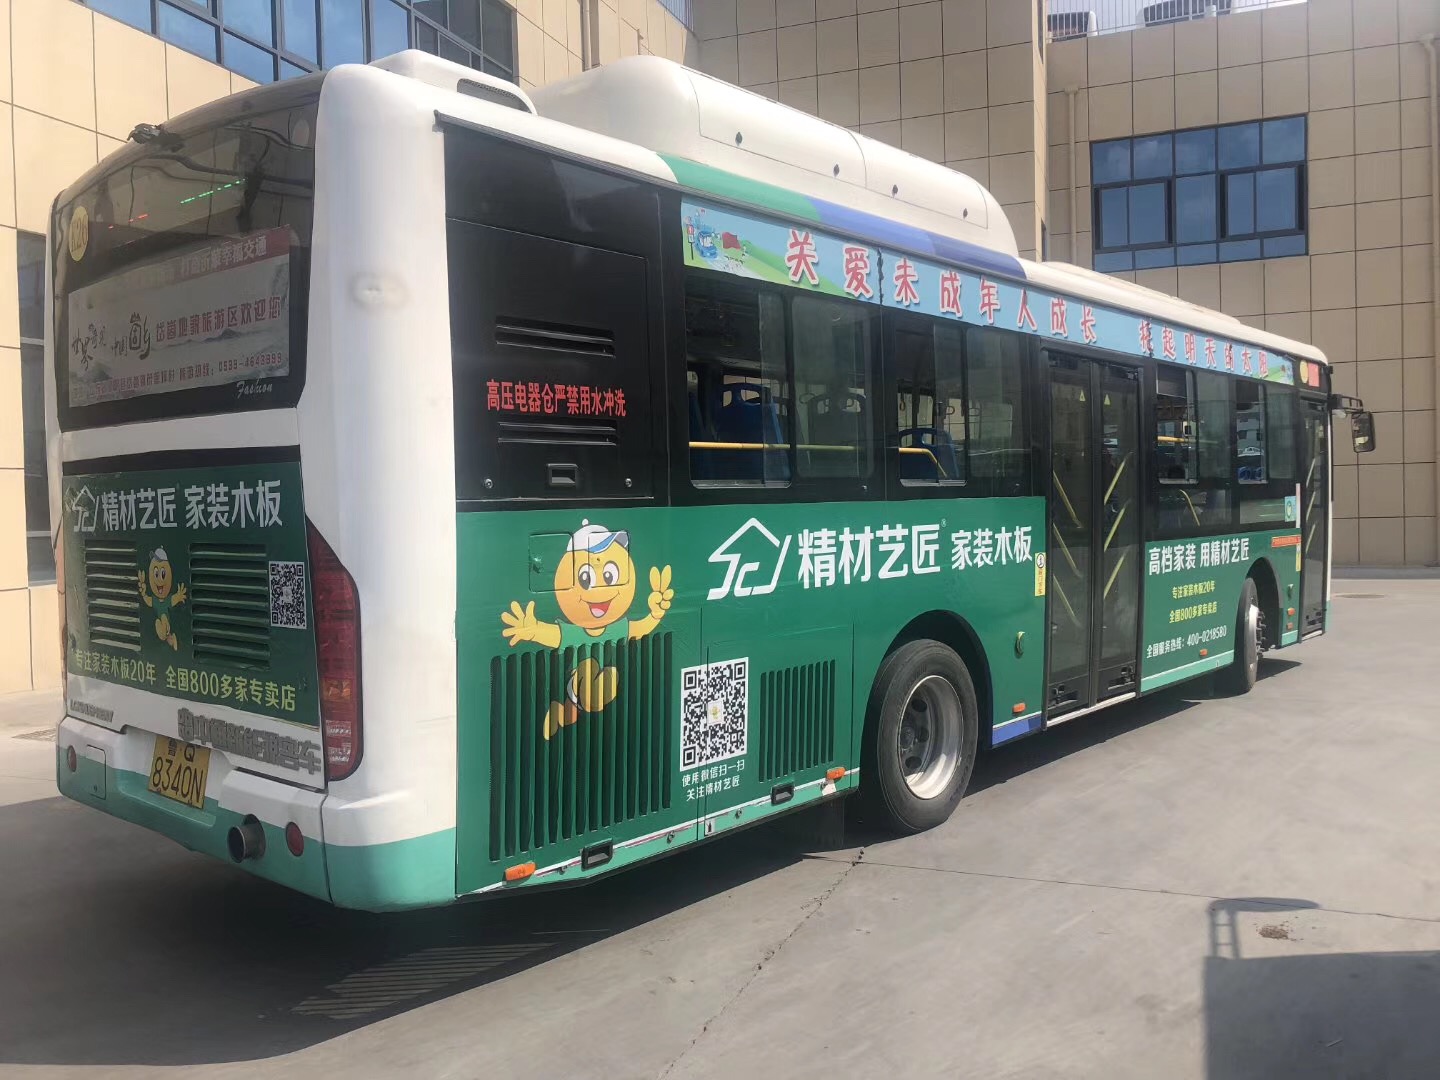 祝贺生态板十大品牌精材艺匠临沂公交车体广告上线